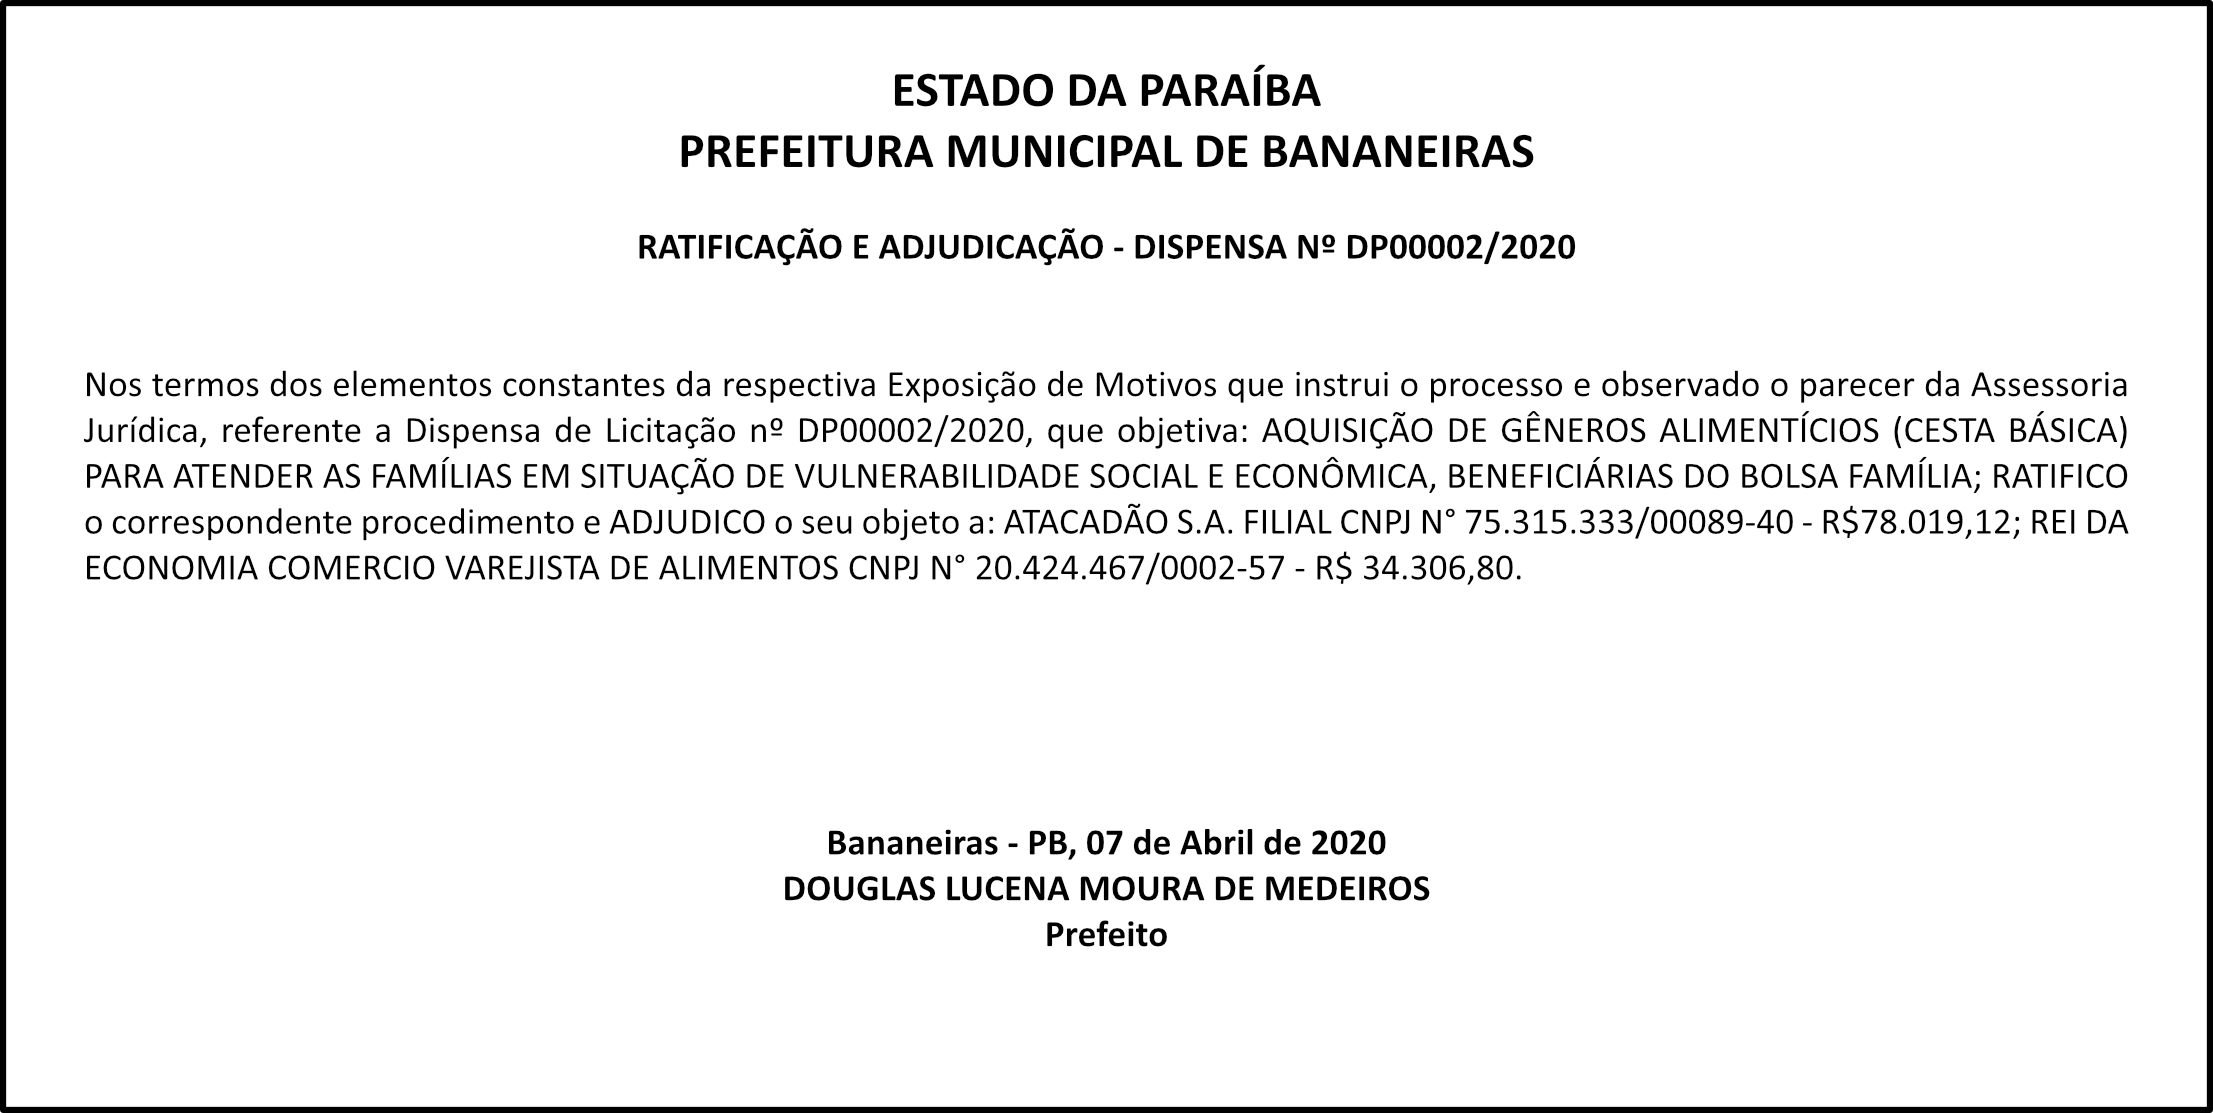 PREFEITURA MUNICIPAL DE BANANEIRAS – RATIFICAÇÃO E ADJUDICAÇÃO – DISPENSA DE LICITAÇÃO DP Nº 00002/2020